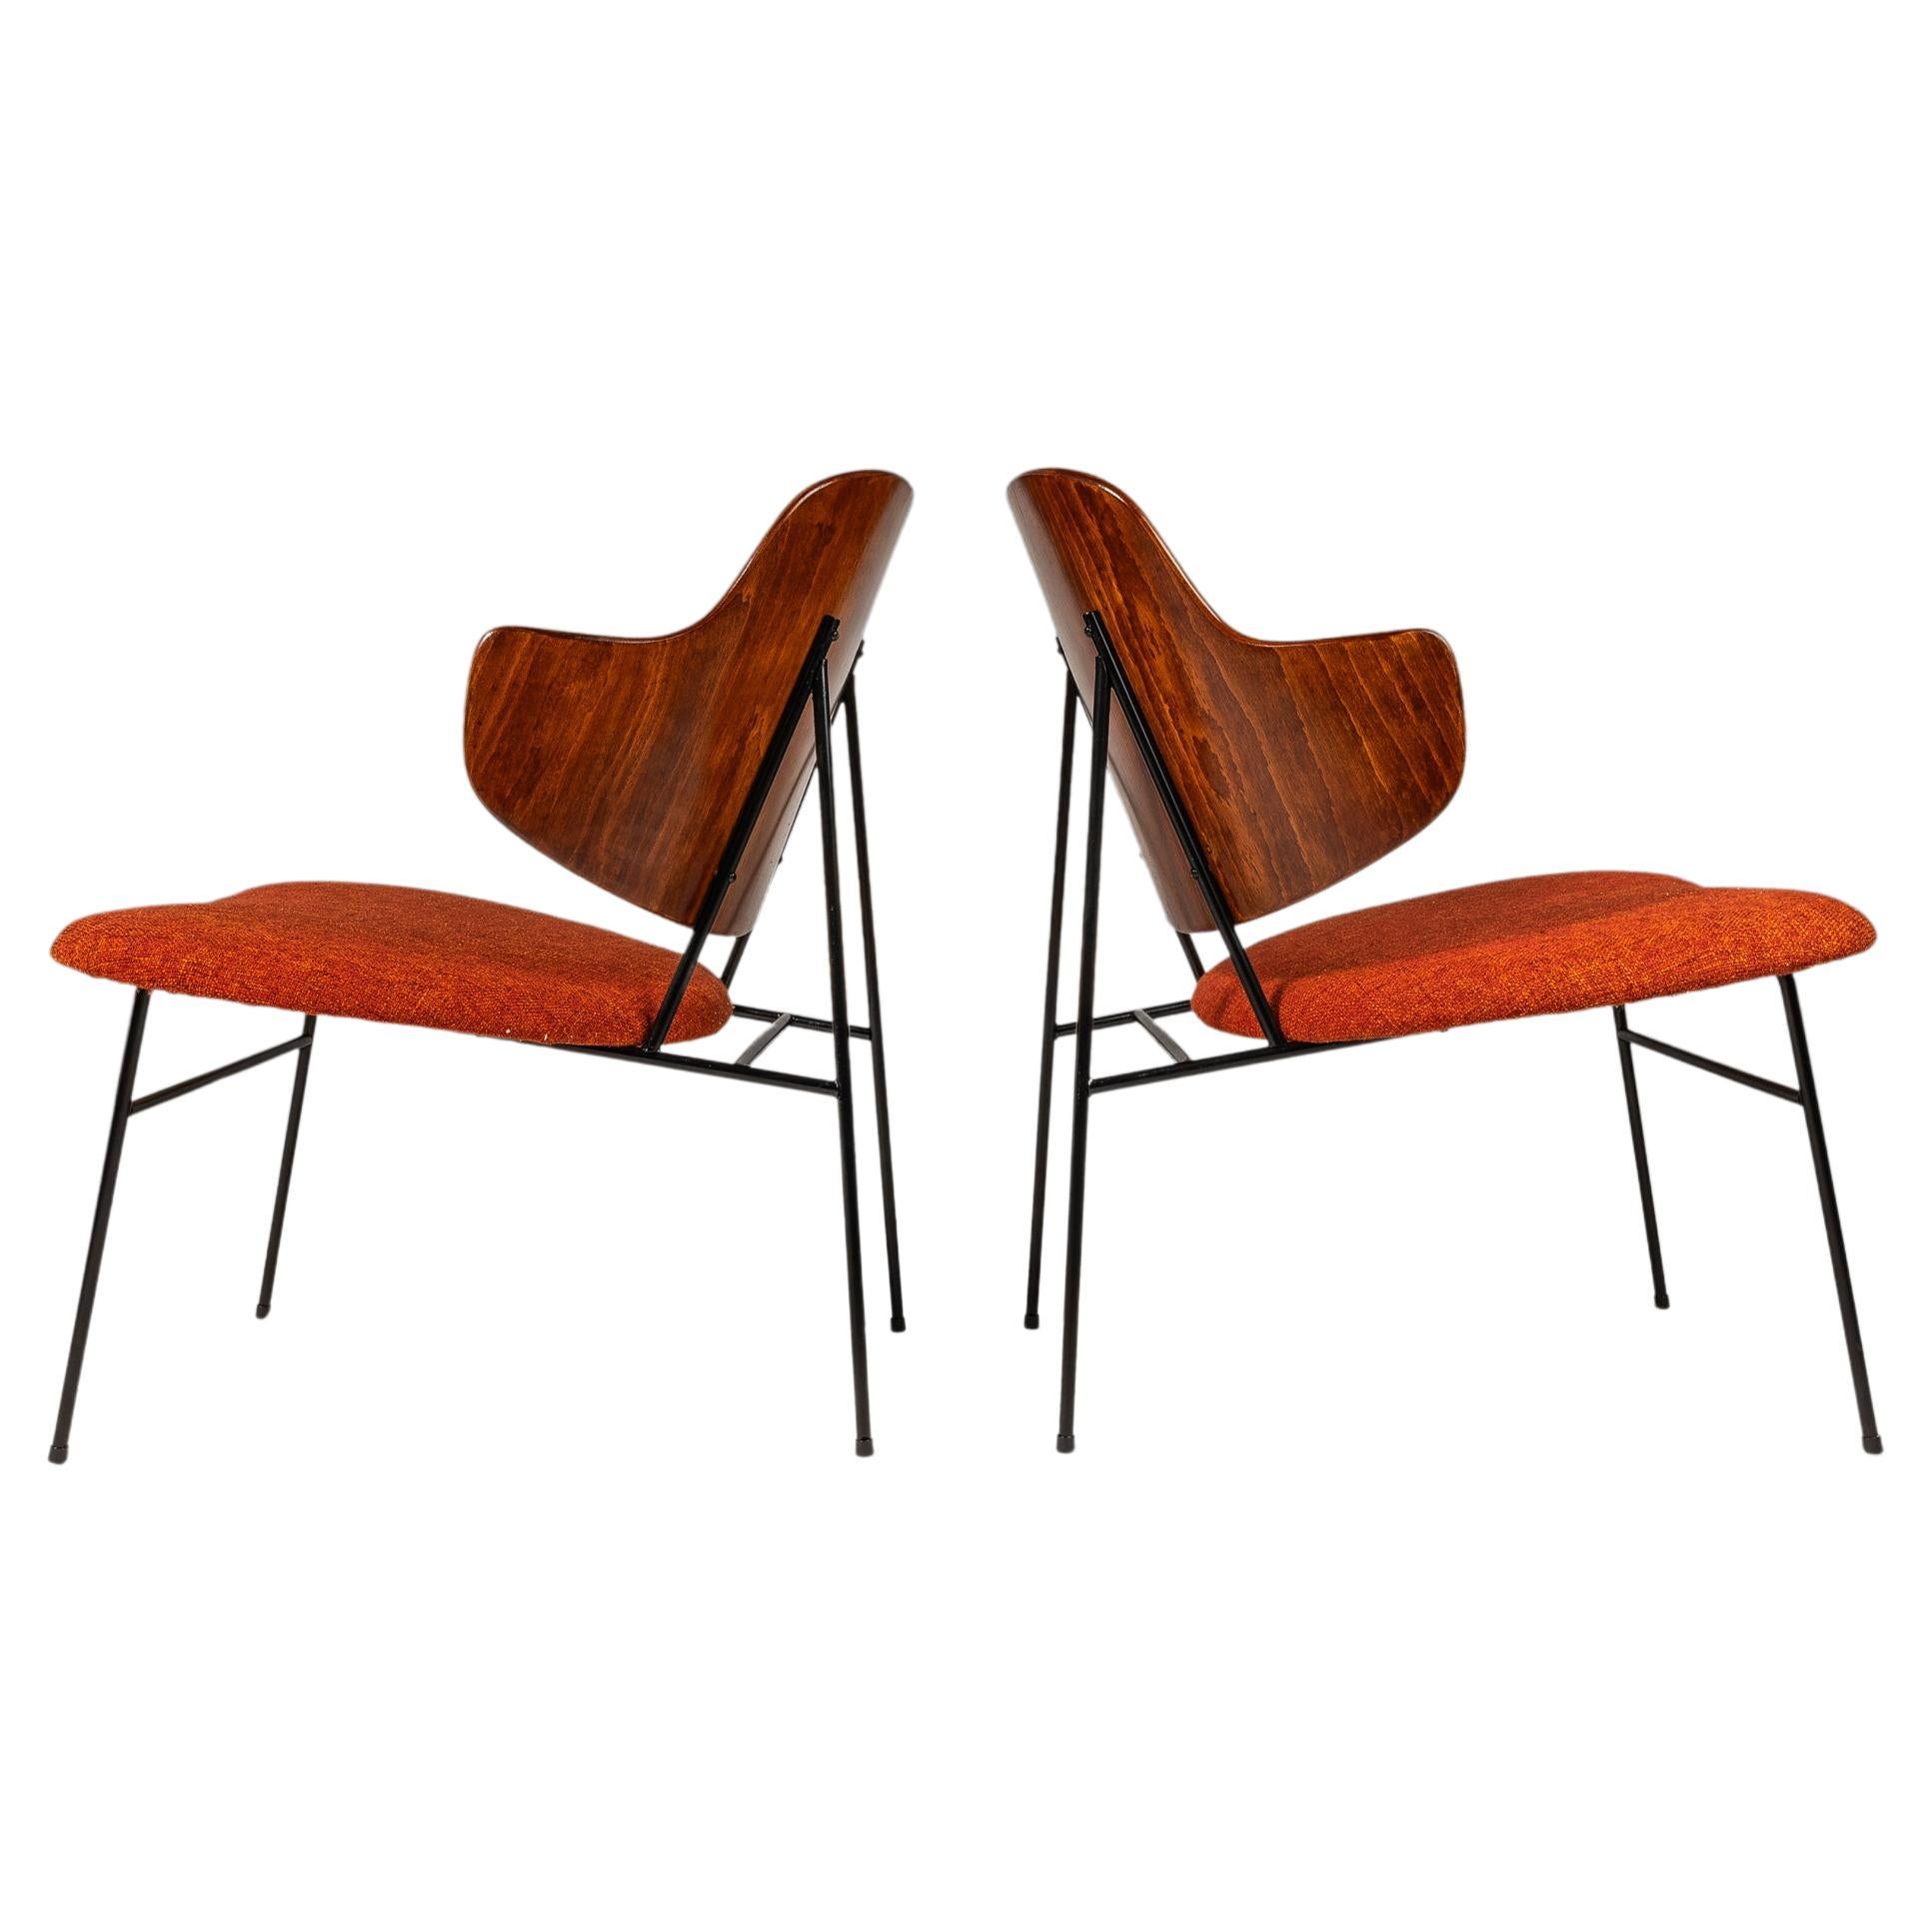 Satz von 2 restaurierten „Penguin“-Stühlen von Ib Kofod-Larsen, Selig, Dänemark, ca. 1960er Jahre